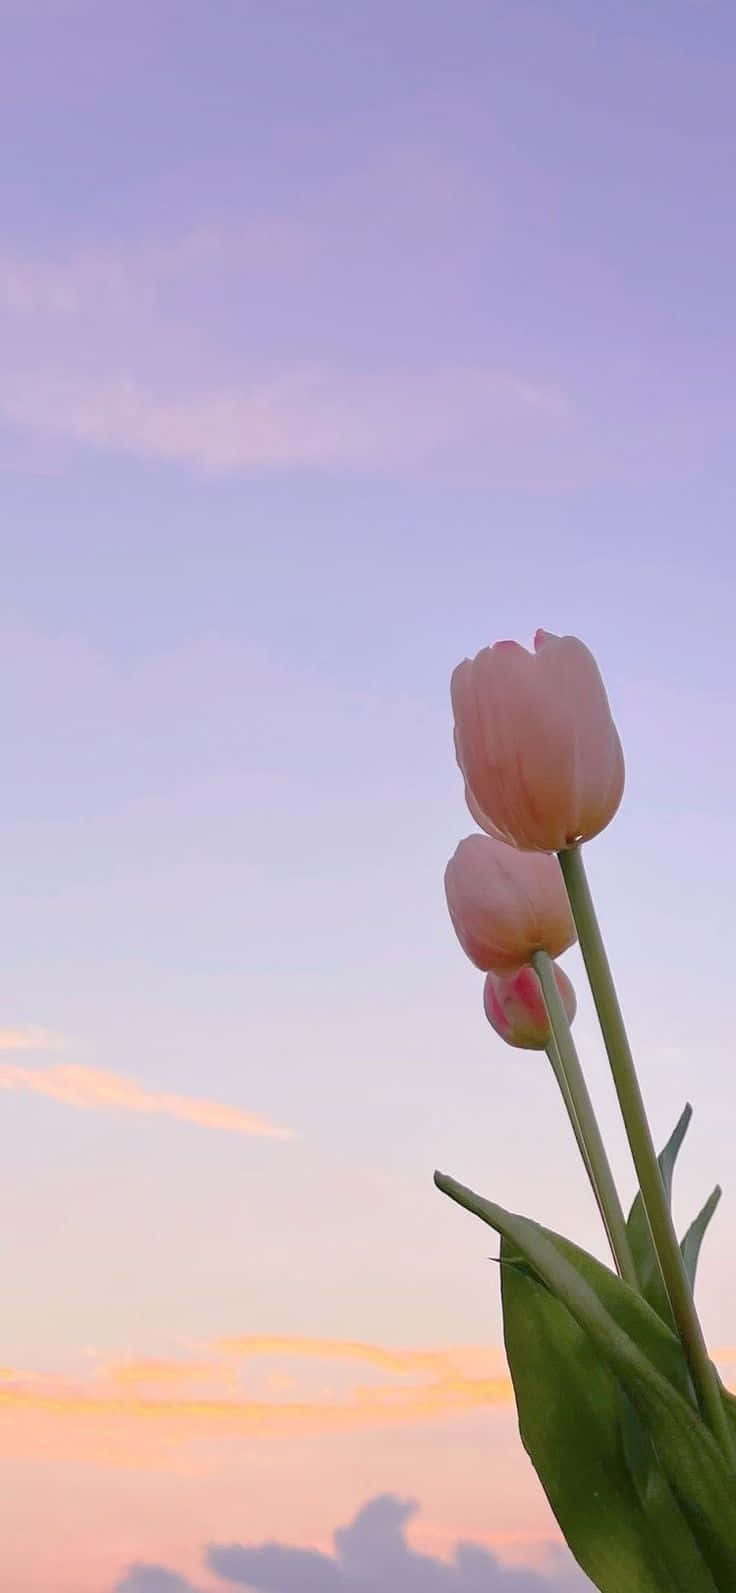 Pastel Sky Tulips Aesthetic.jpg Wallpaper